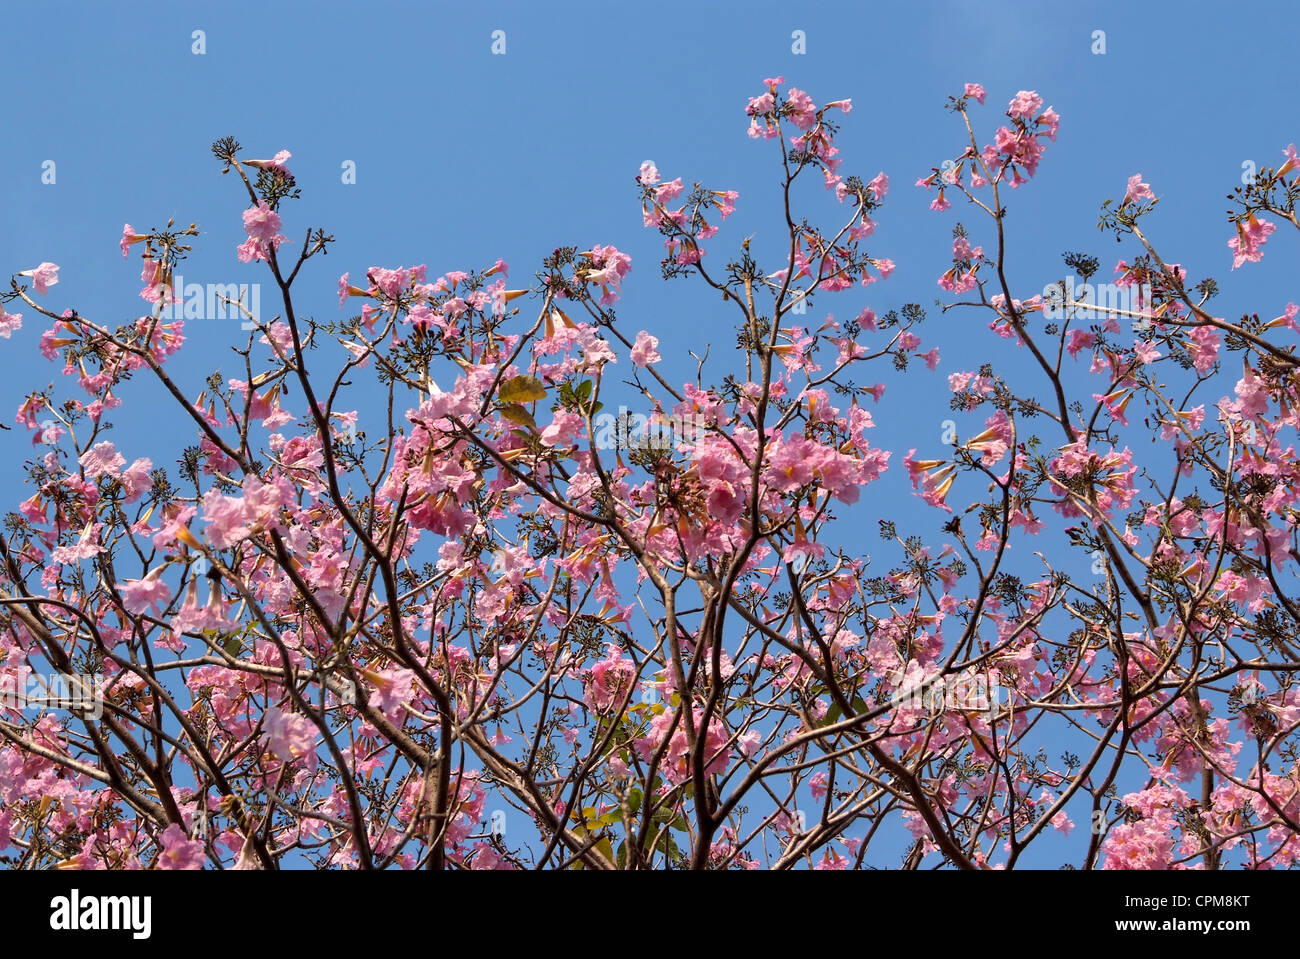 Tebebuia Flower(Pink trumpet) blooming in Spring season Stock Photo